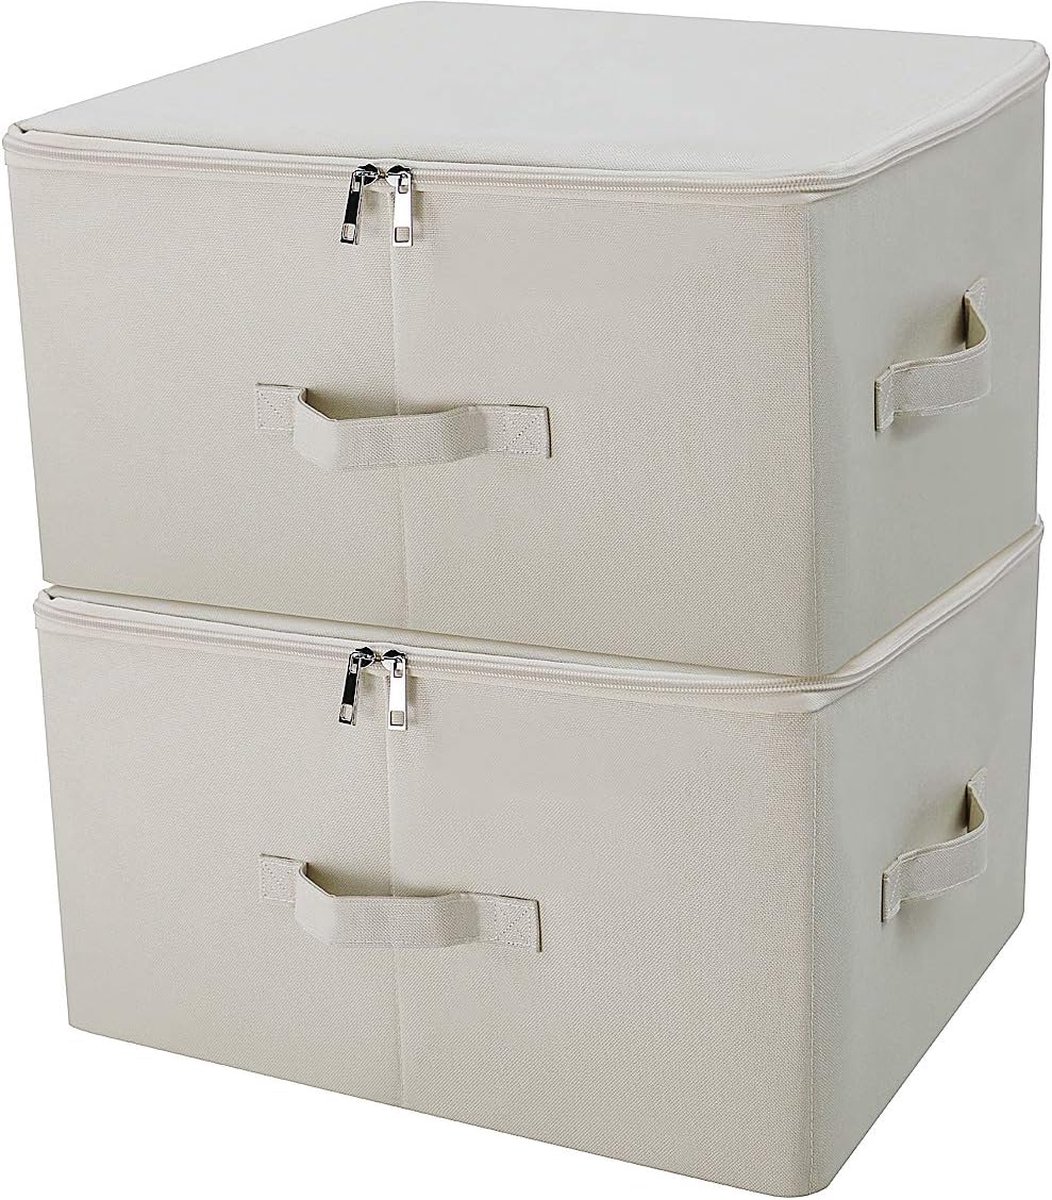 Collapsible Storage Binks met Lids, Storage Cubes, Tide Up Your Closet, Beige, set van 2